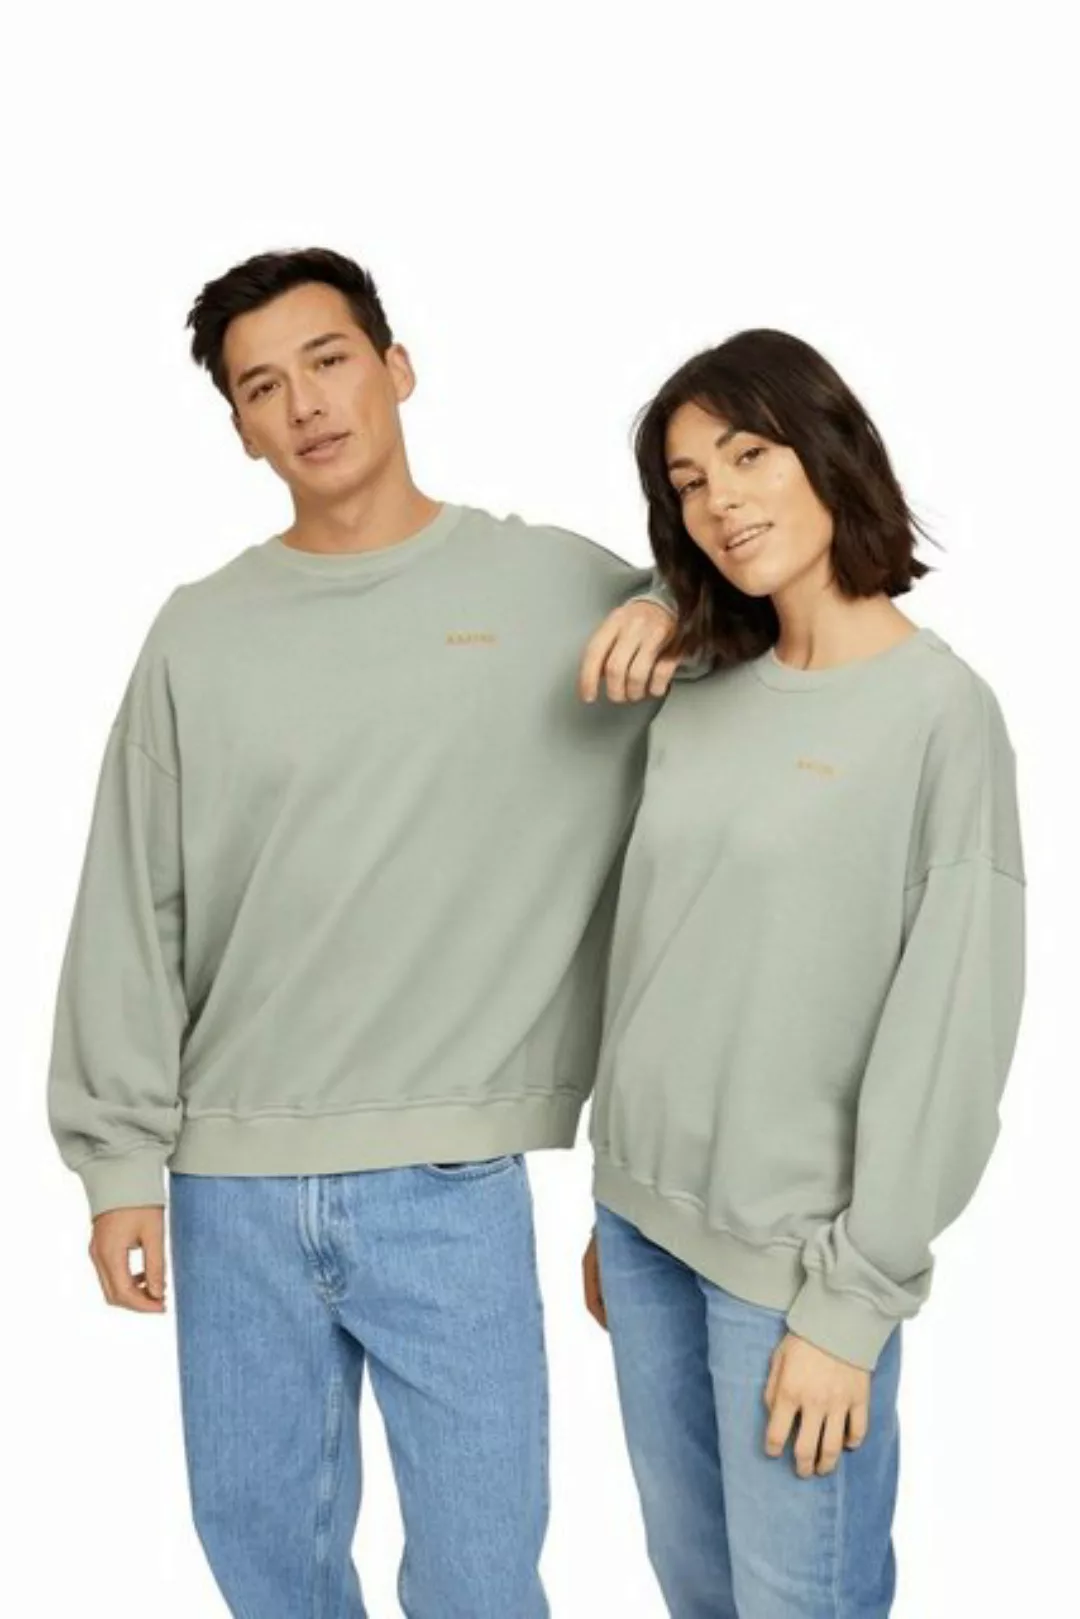 MAZINE Sweatshirt ROCKLAND SWEATER Grün Top Modische Unisex Sweatshirt günstig online kaufen